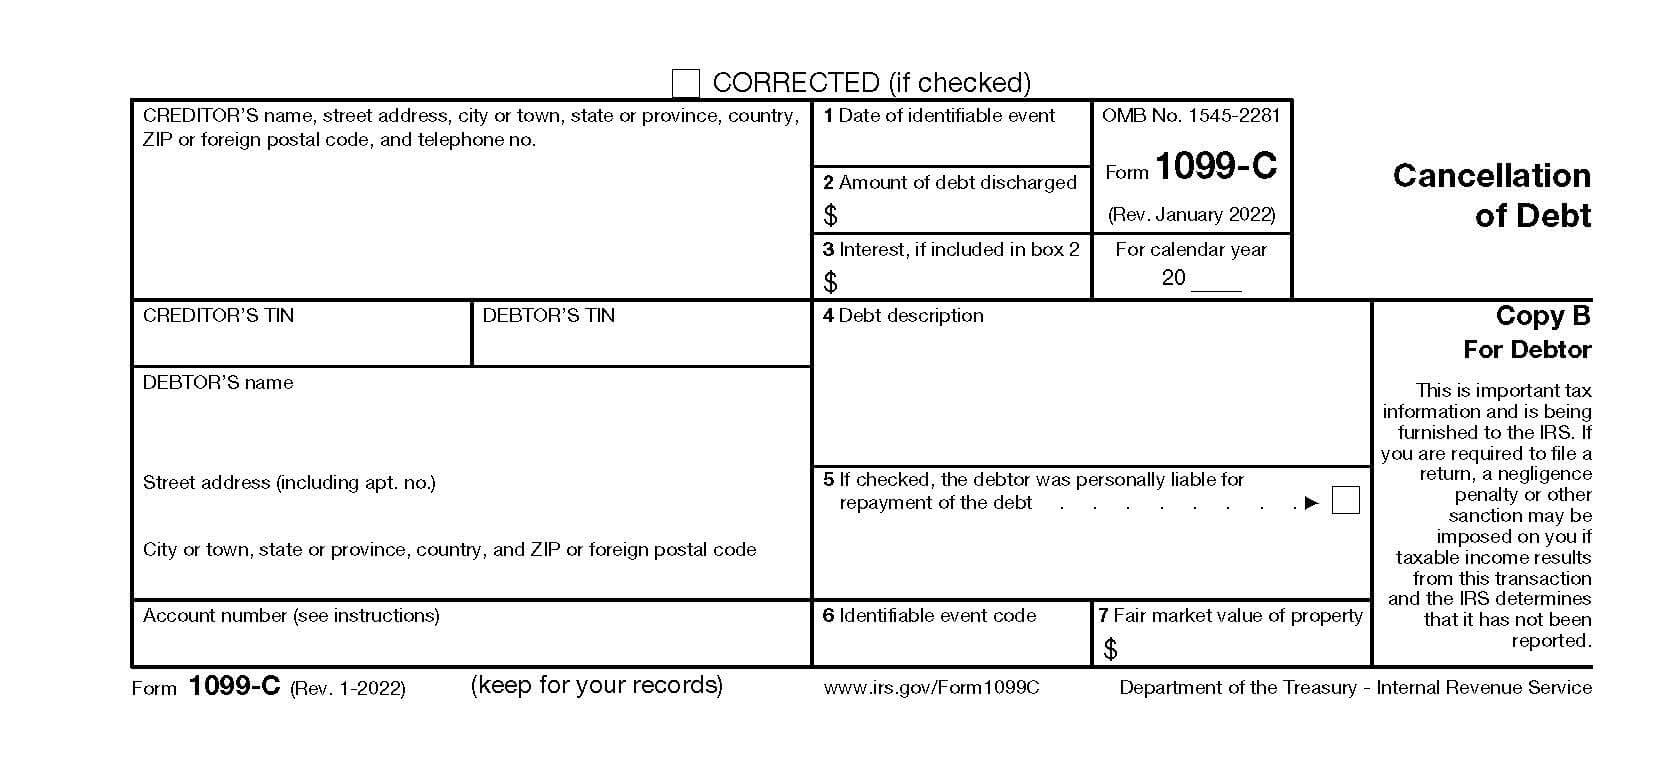 Ejemplo del formulario 1099-C del IRS